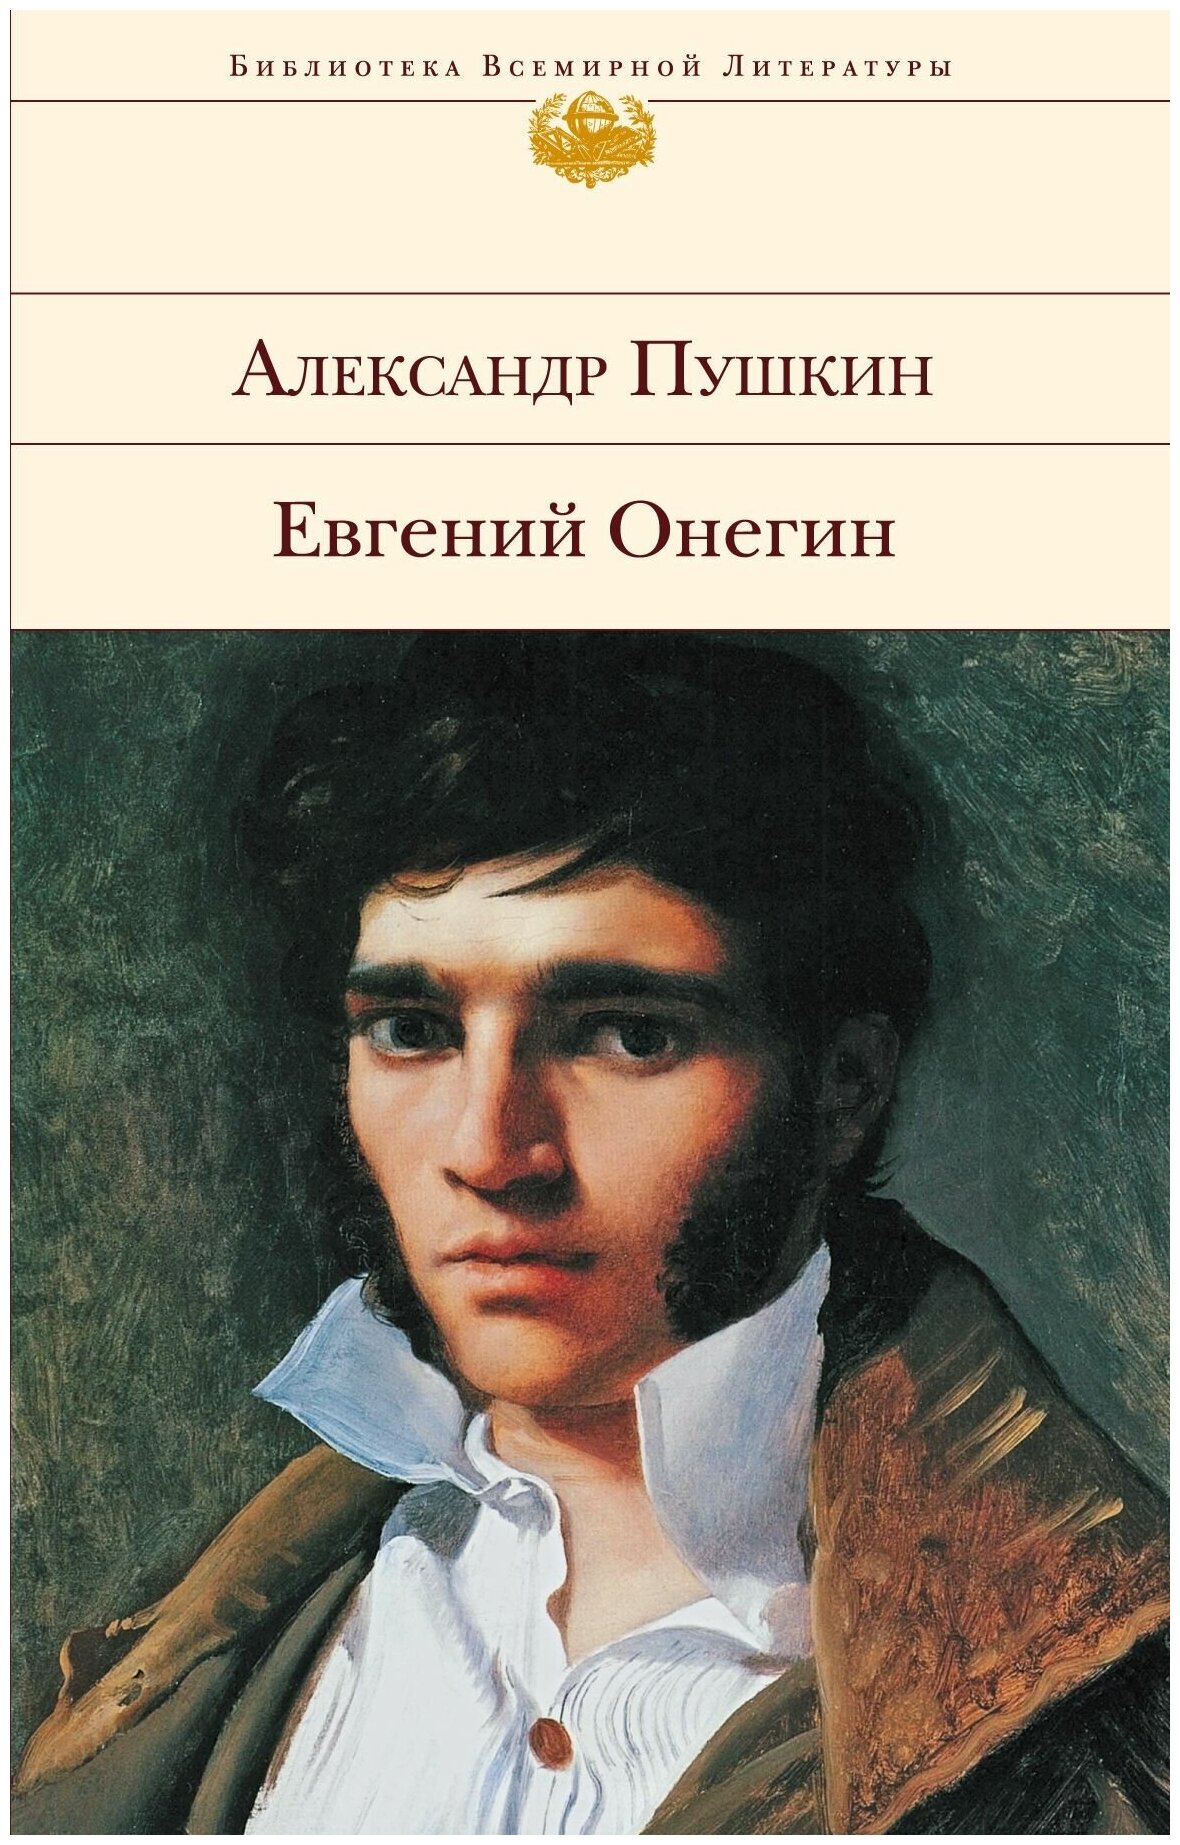 Евгений Онегин (Пушкин Александр Сергеевич) - фото №1